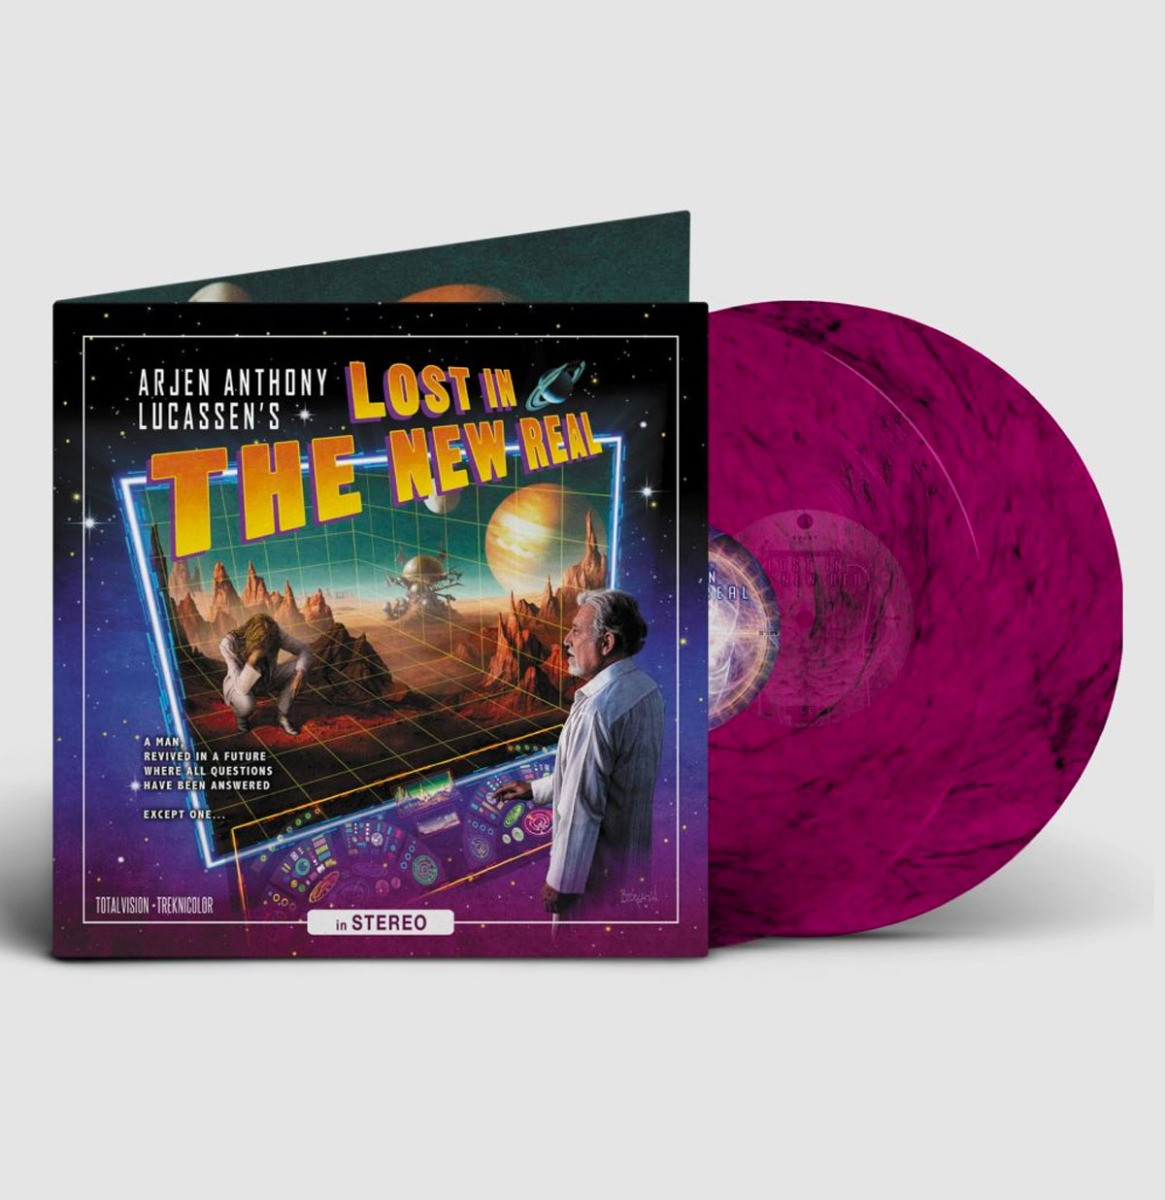 Arjen Anthony Lucassen - Lost In The New Real (Gekleurd Vinyl) 2LP